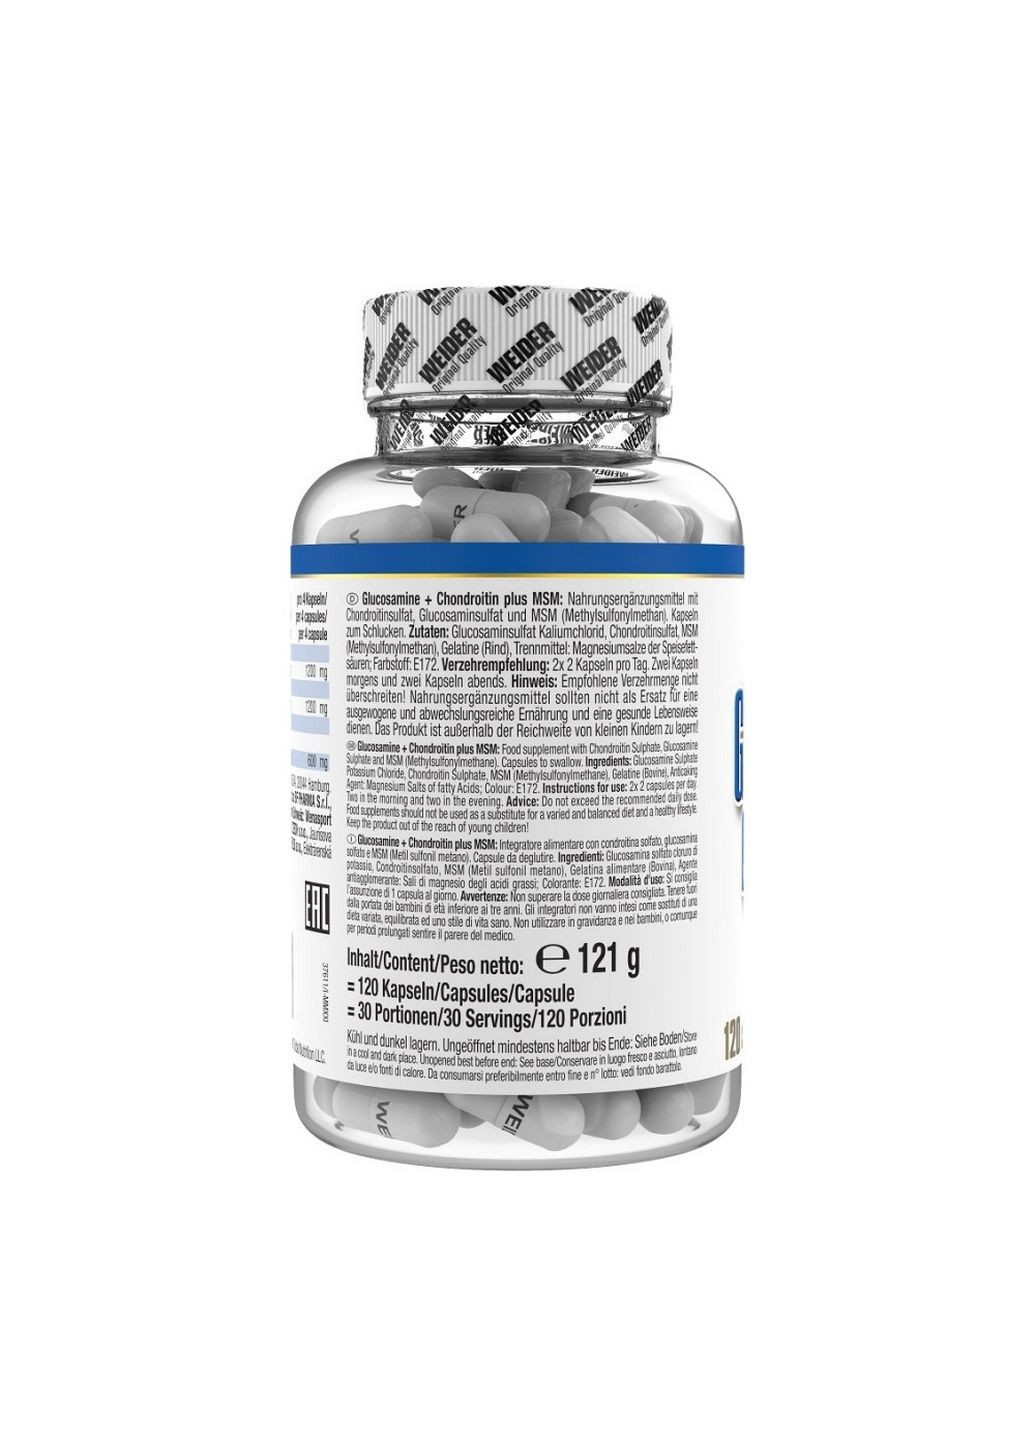 Препарат для суставов и связок Glucosamine Chondroitin plus MSM, 120 капсул Weider (293421966)